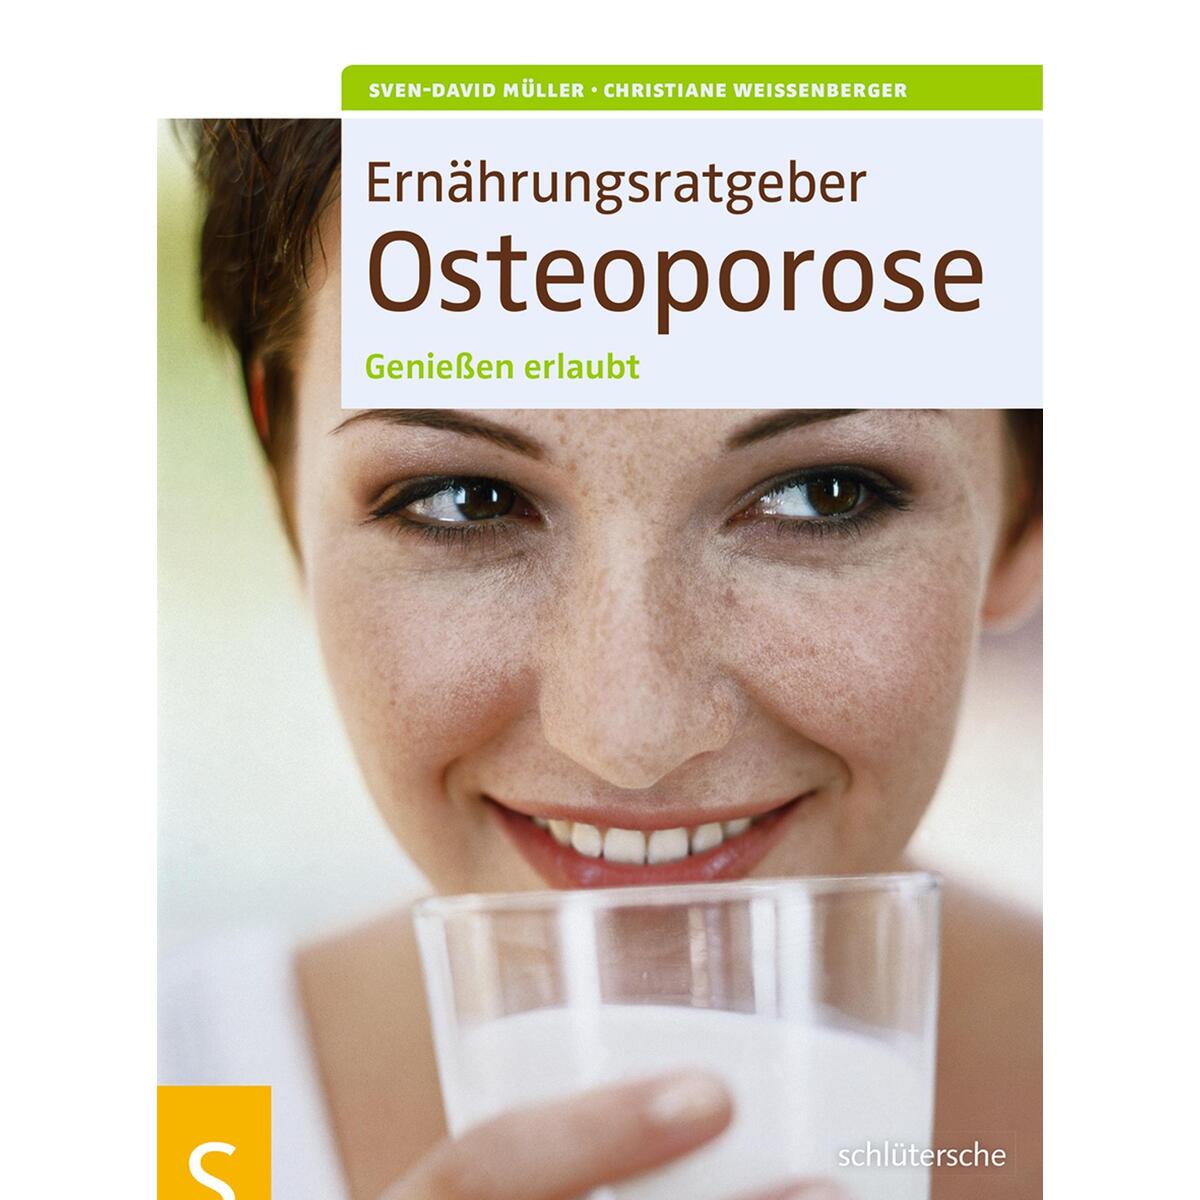 Ernährungsratgeber Osteoporose von Schlütersche Verlag